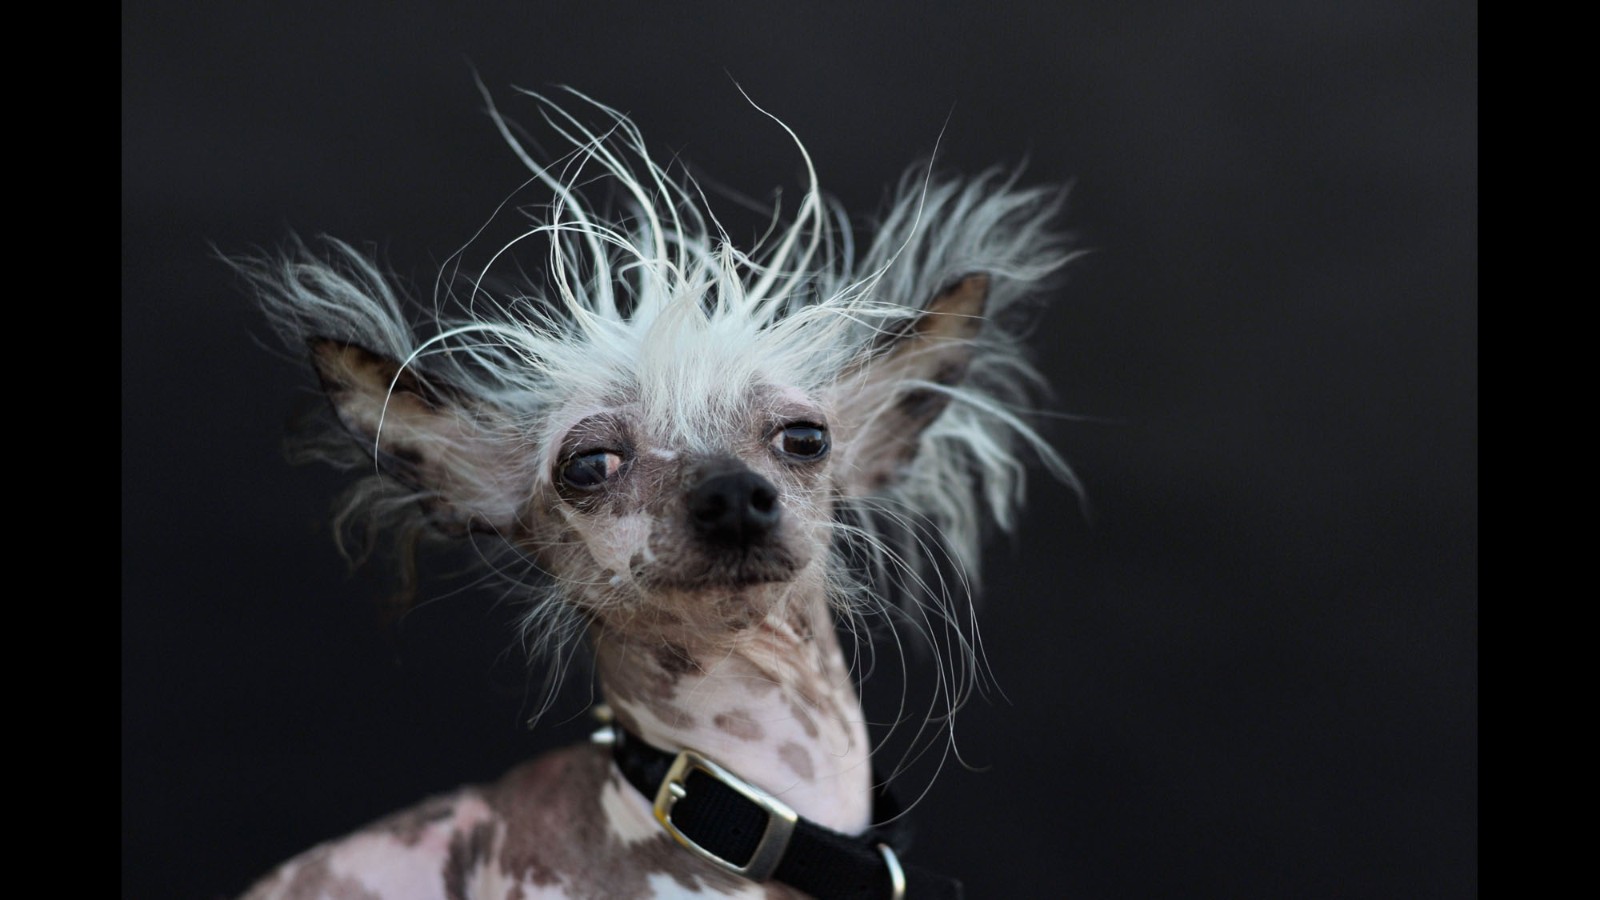 Meet the world's ugliest dog CNN